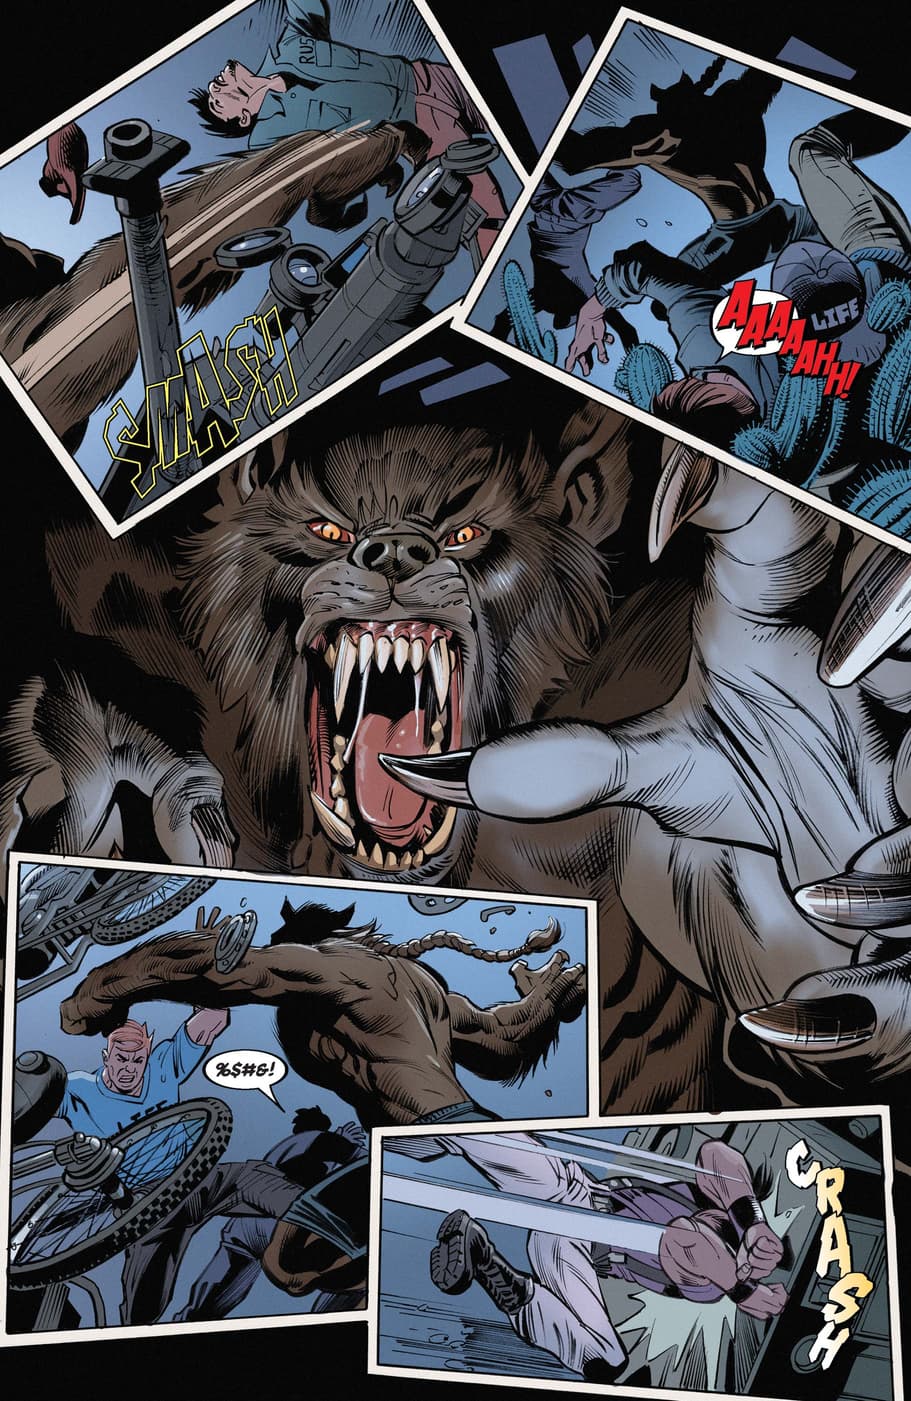 Werewolf by Night attacks in issue #1.